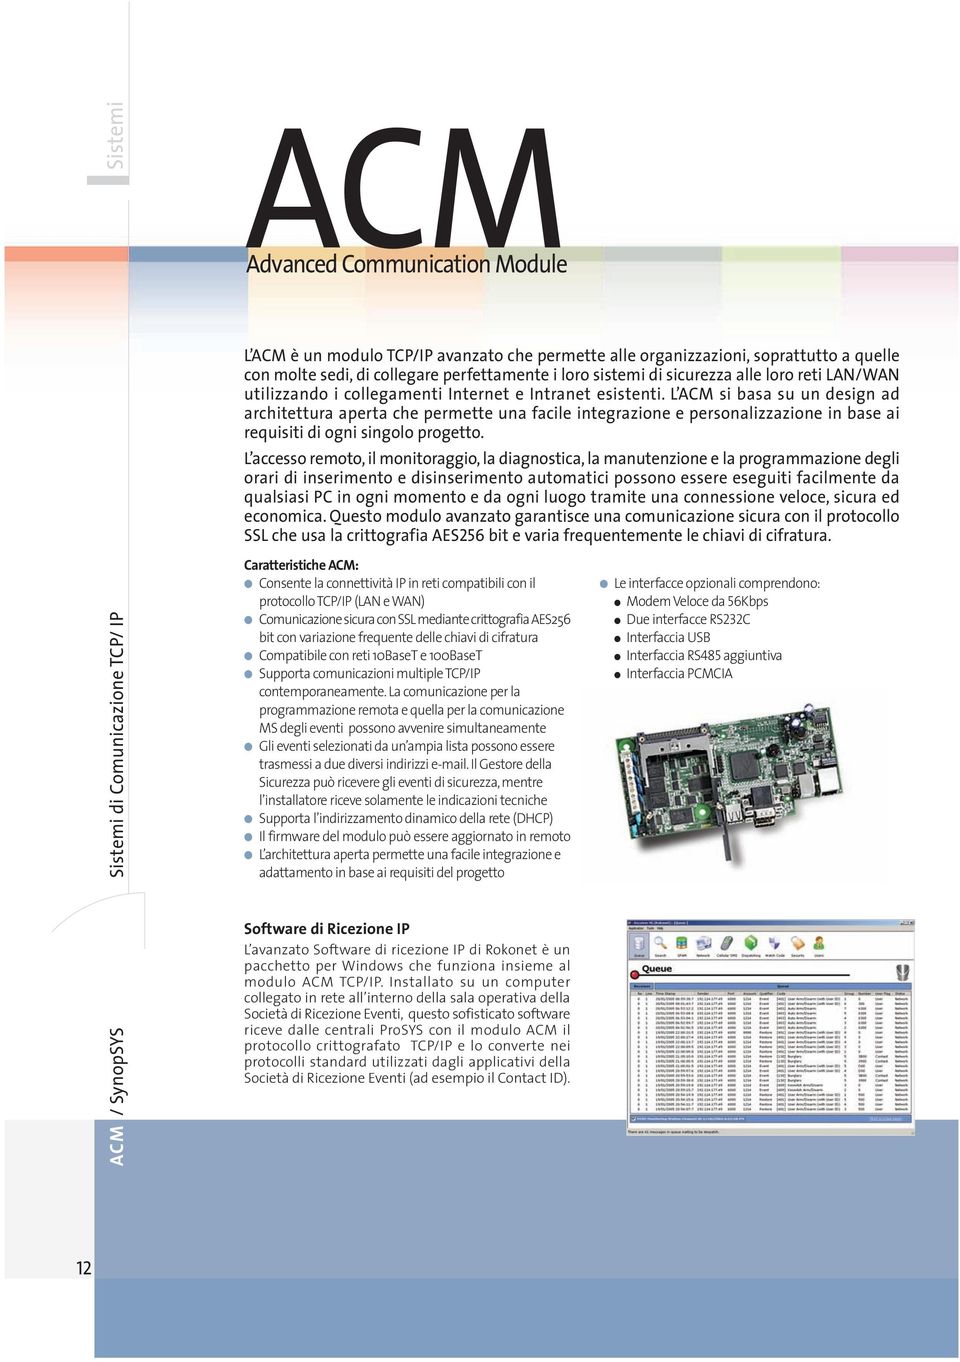 L ACM si basa su un design ad architettura aperta che permette una facile integrazione e personalizzazione in base ai requisiti di ogni singolo progetto.